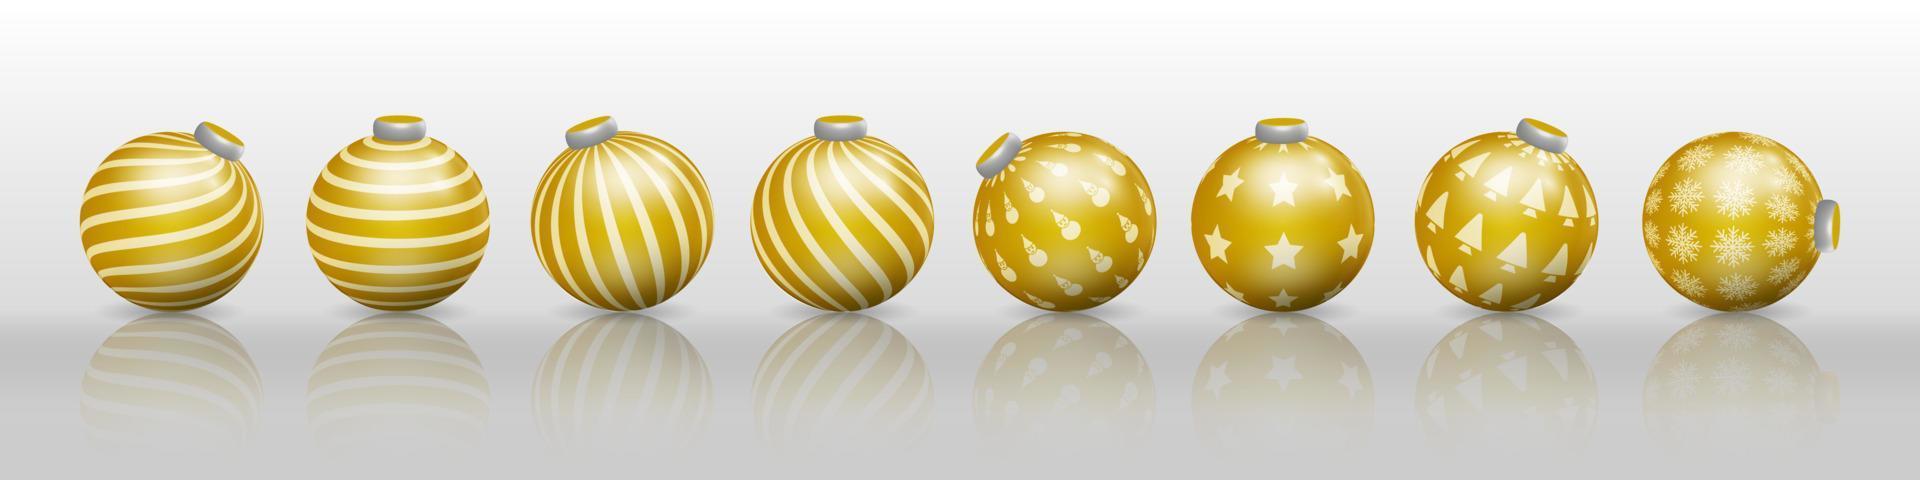 reeks van gouden Kerstmis bal decoraties, ornamenten met divers patronen vector